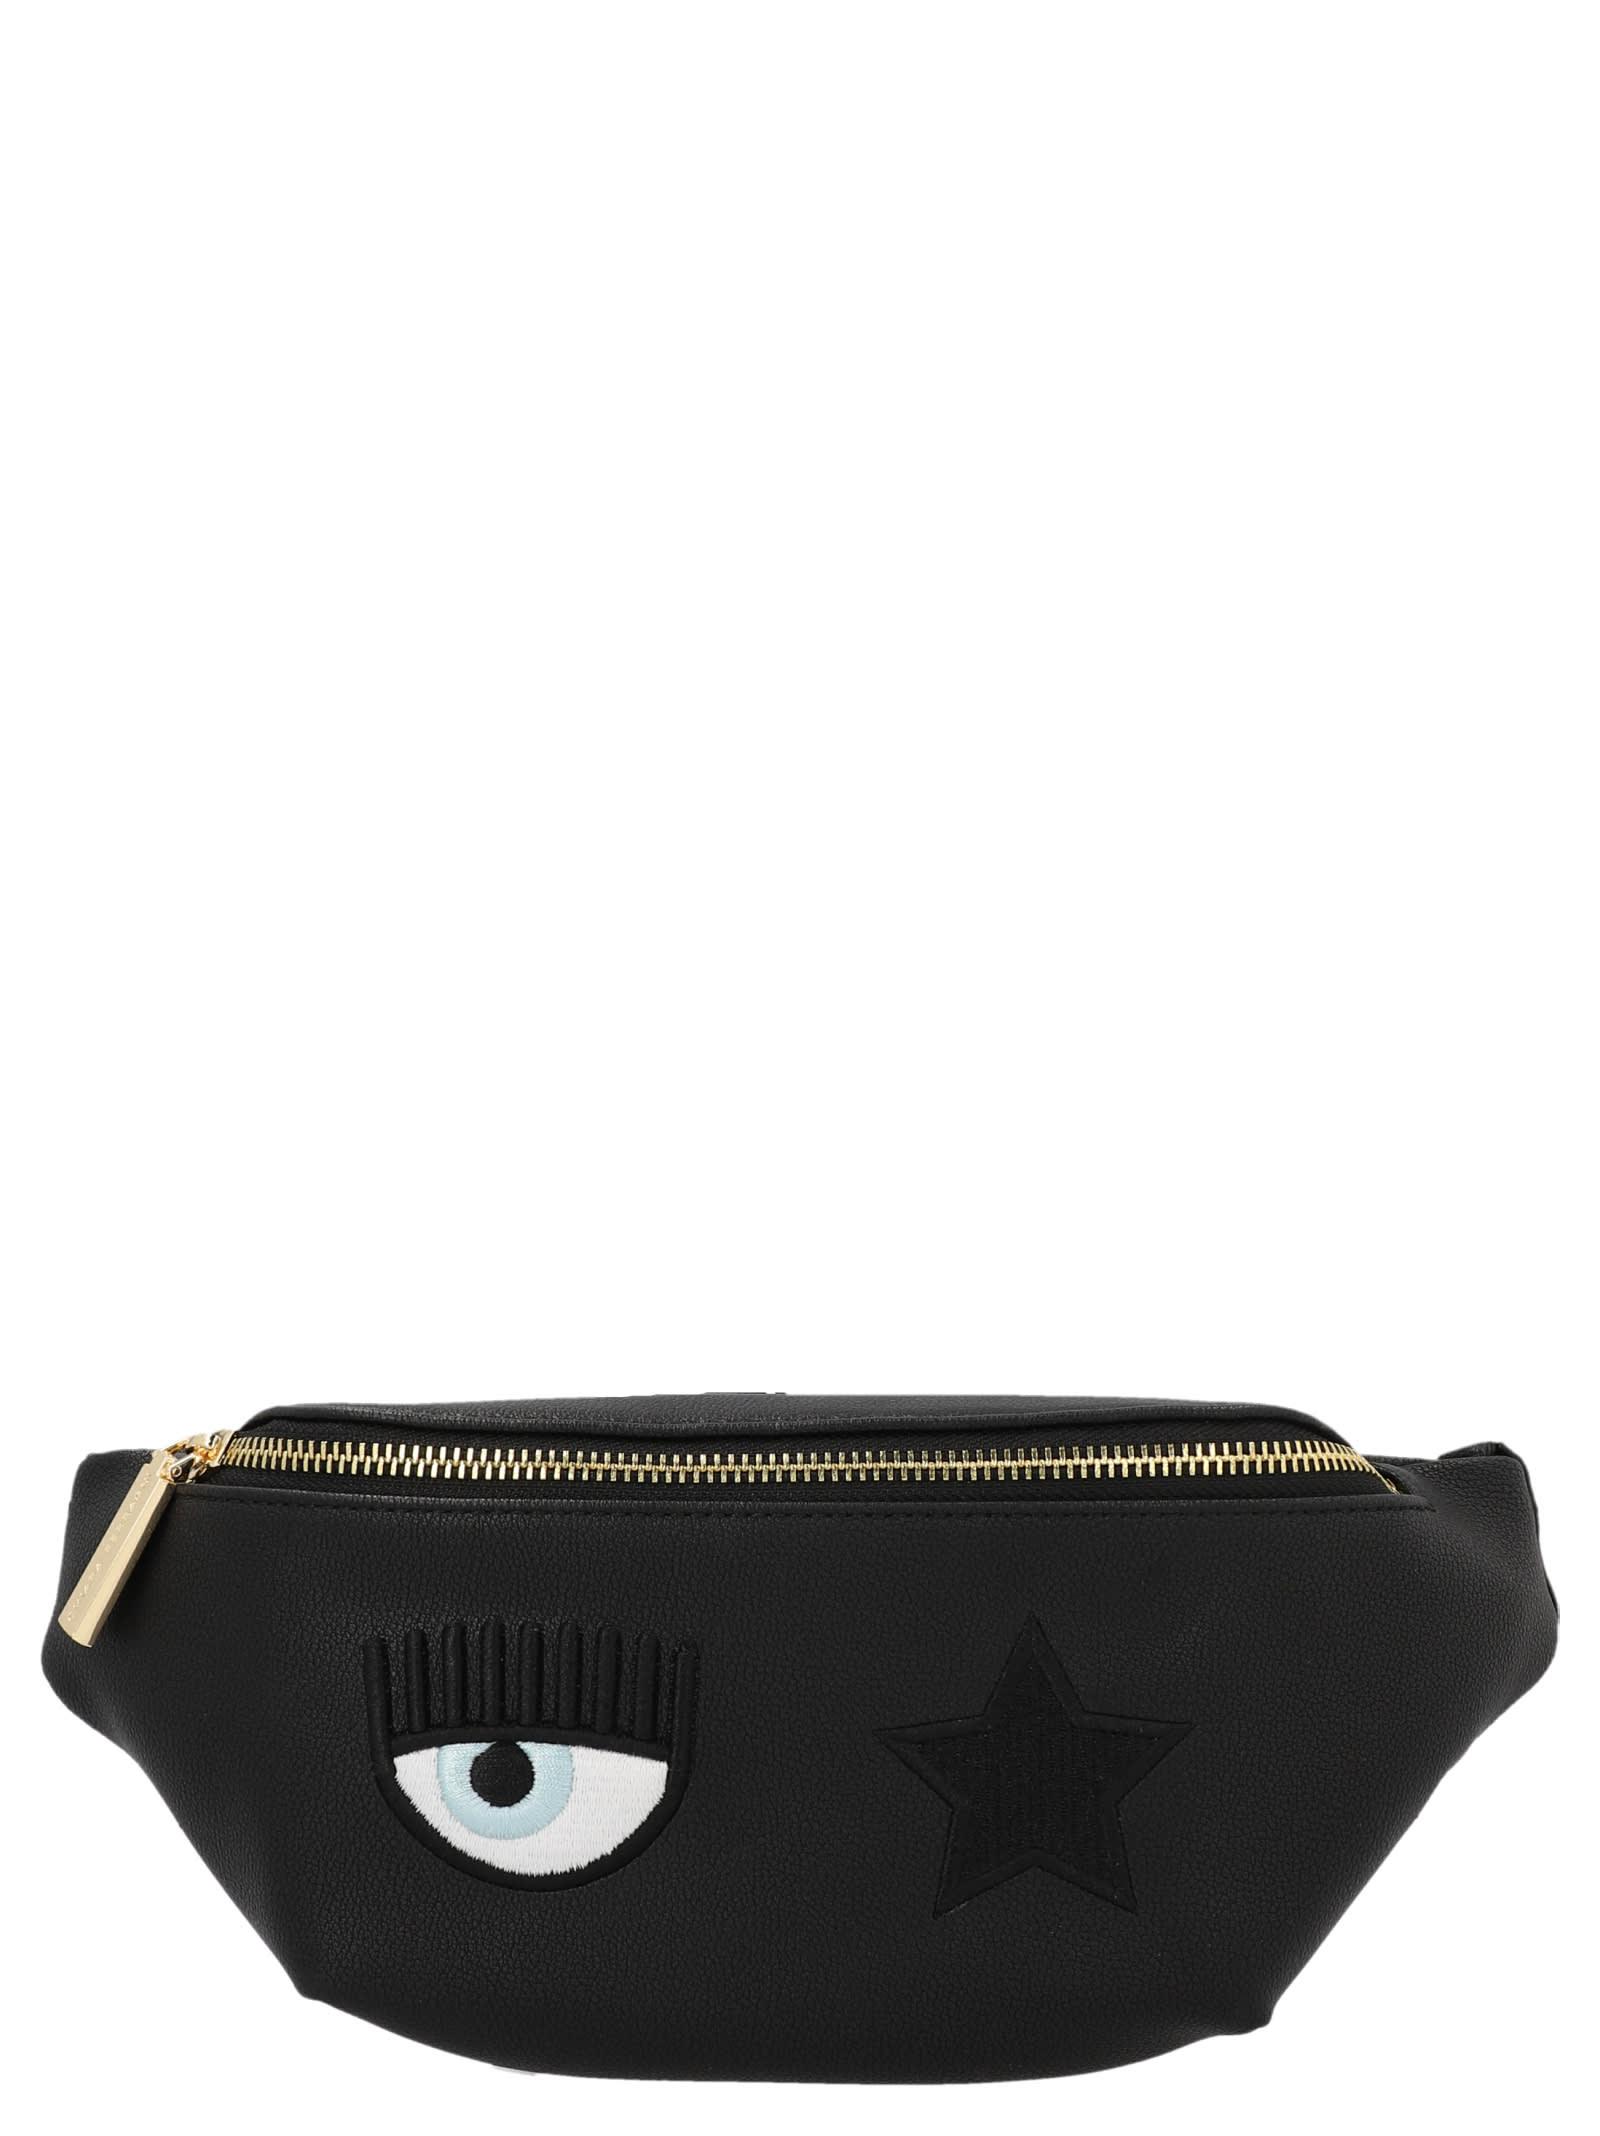 Chiara Ferragni Eye Star Belt Bag in Black | Lyst